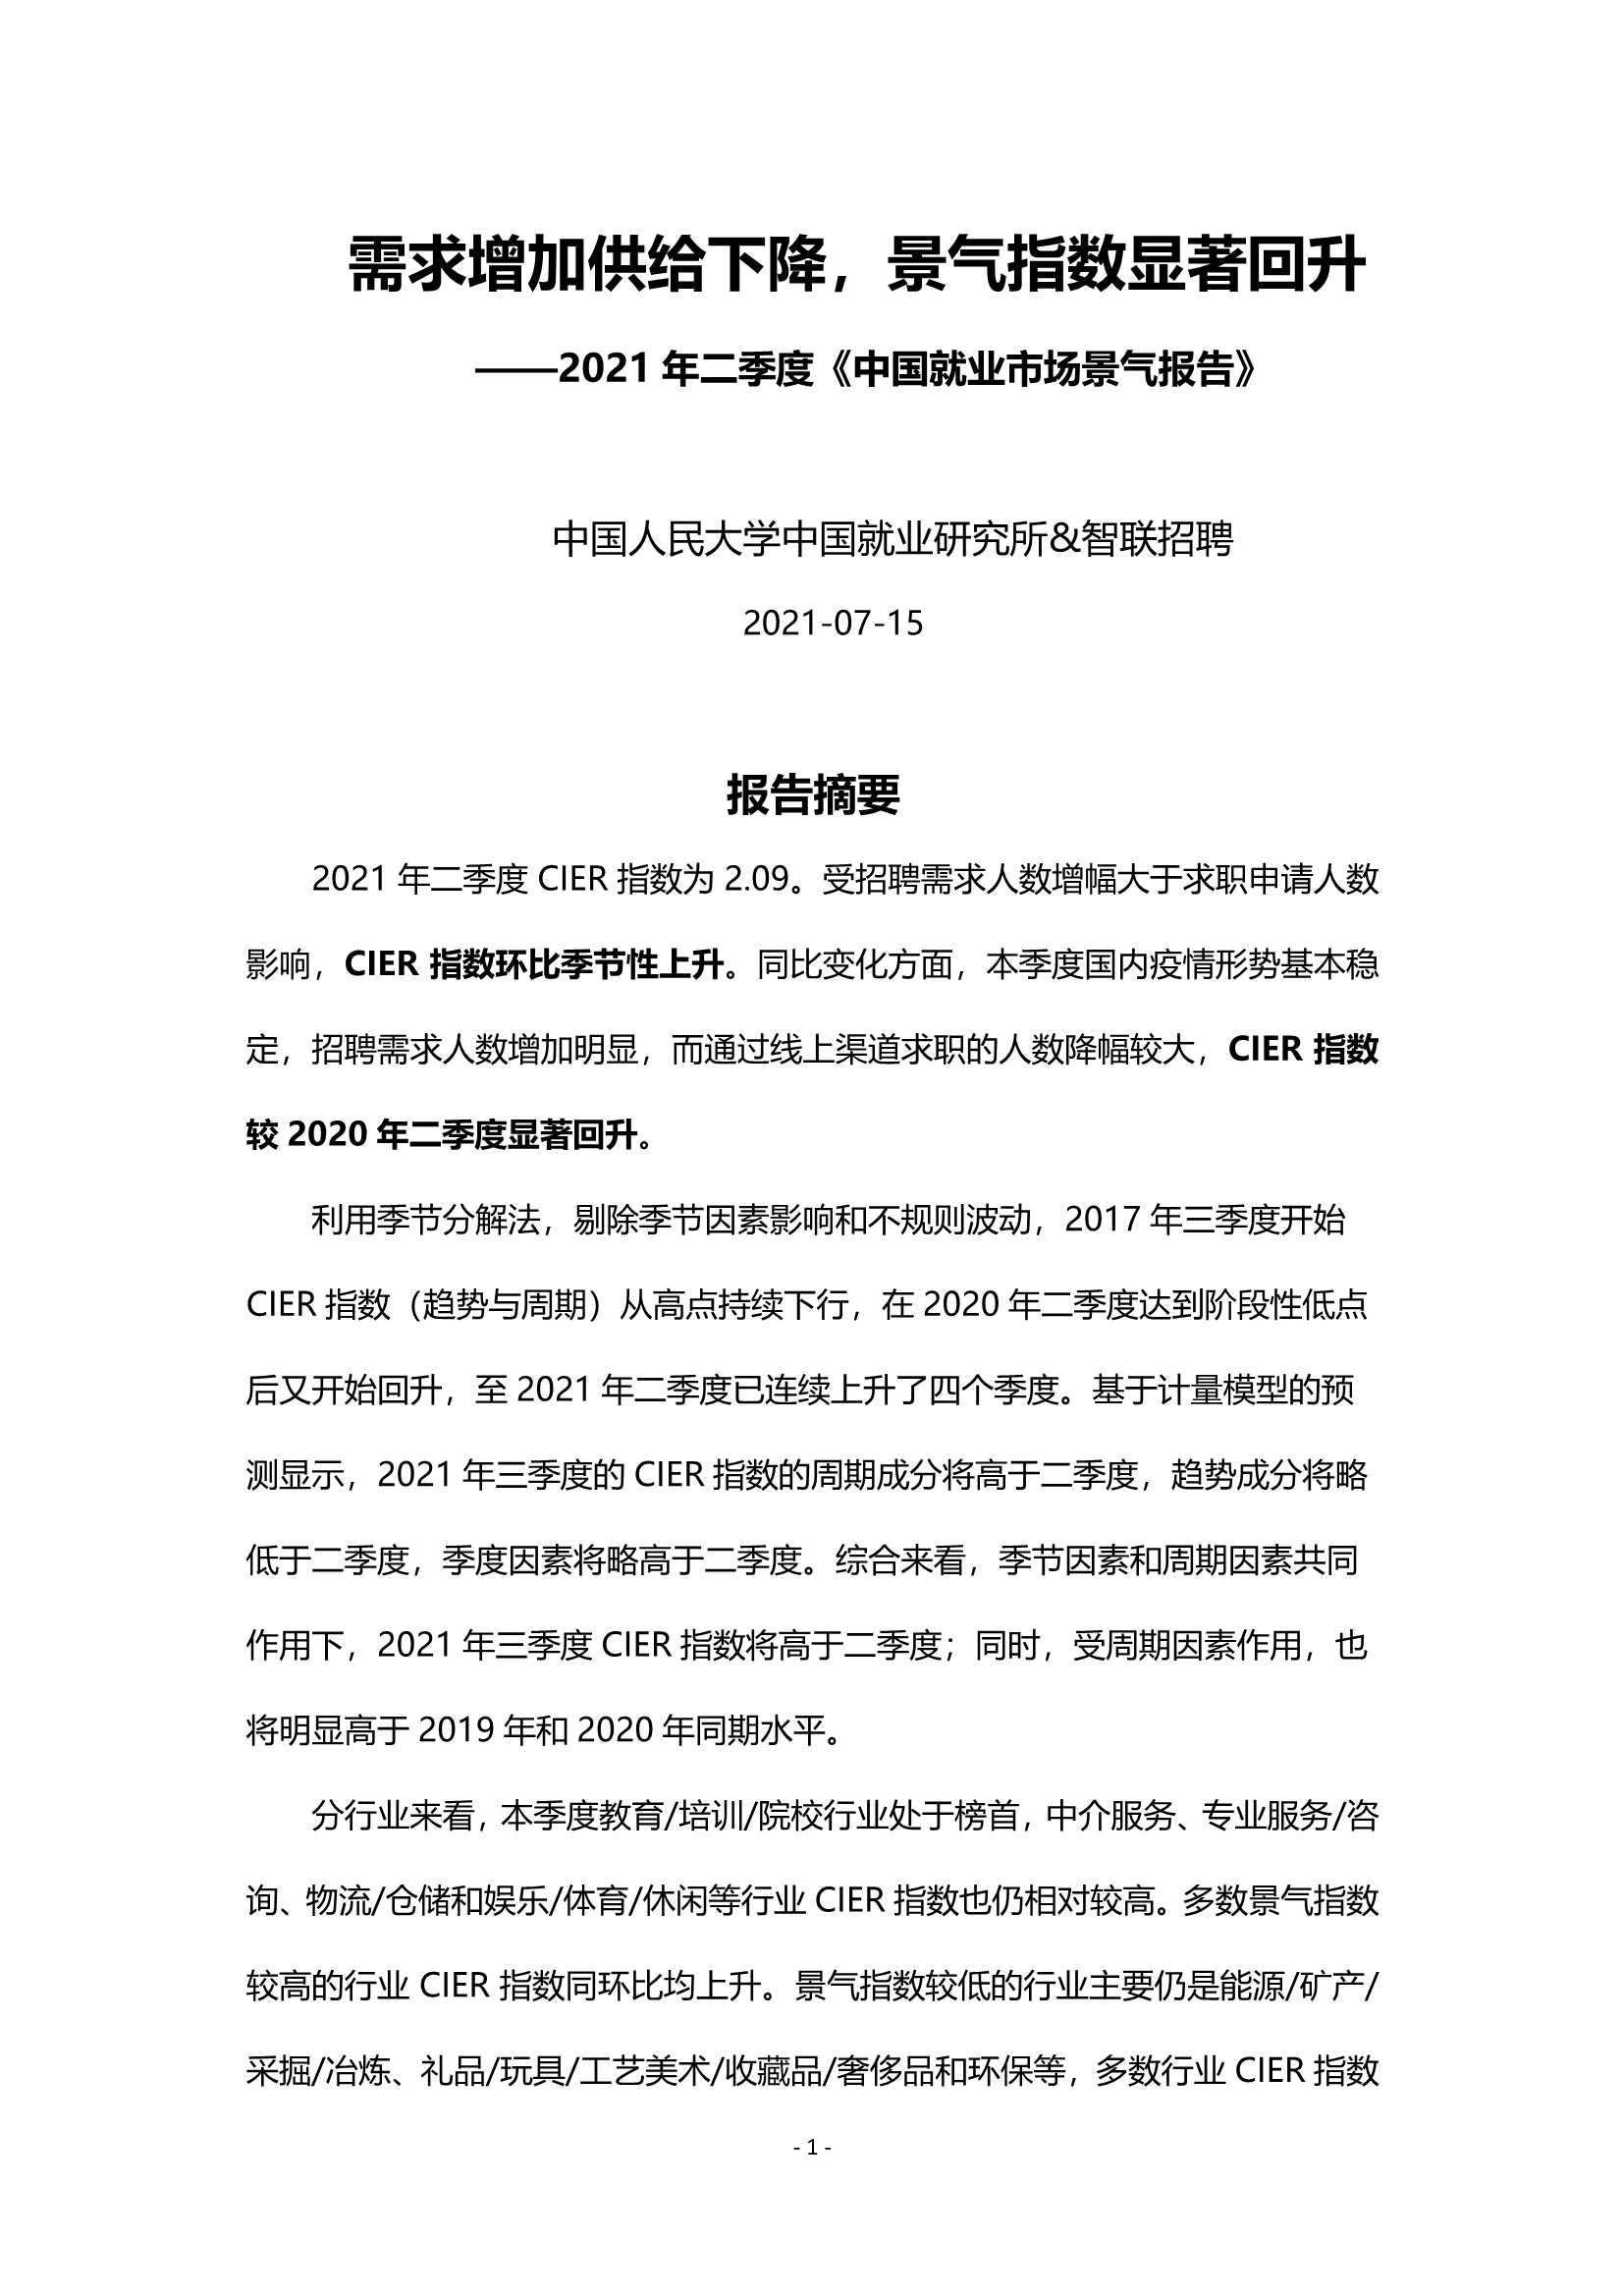 2021年第二季度中国就业市场景气报告-2021.10-21页